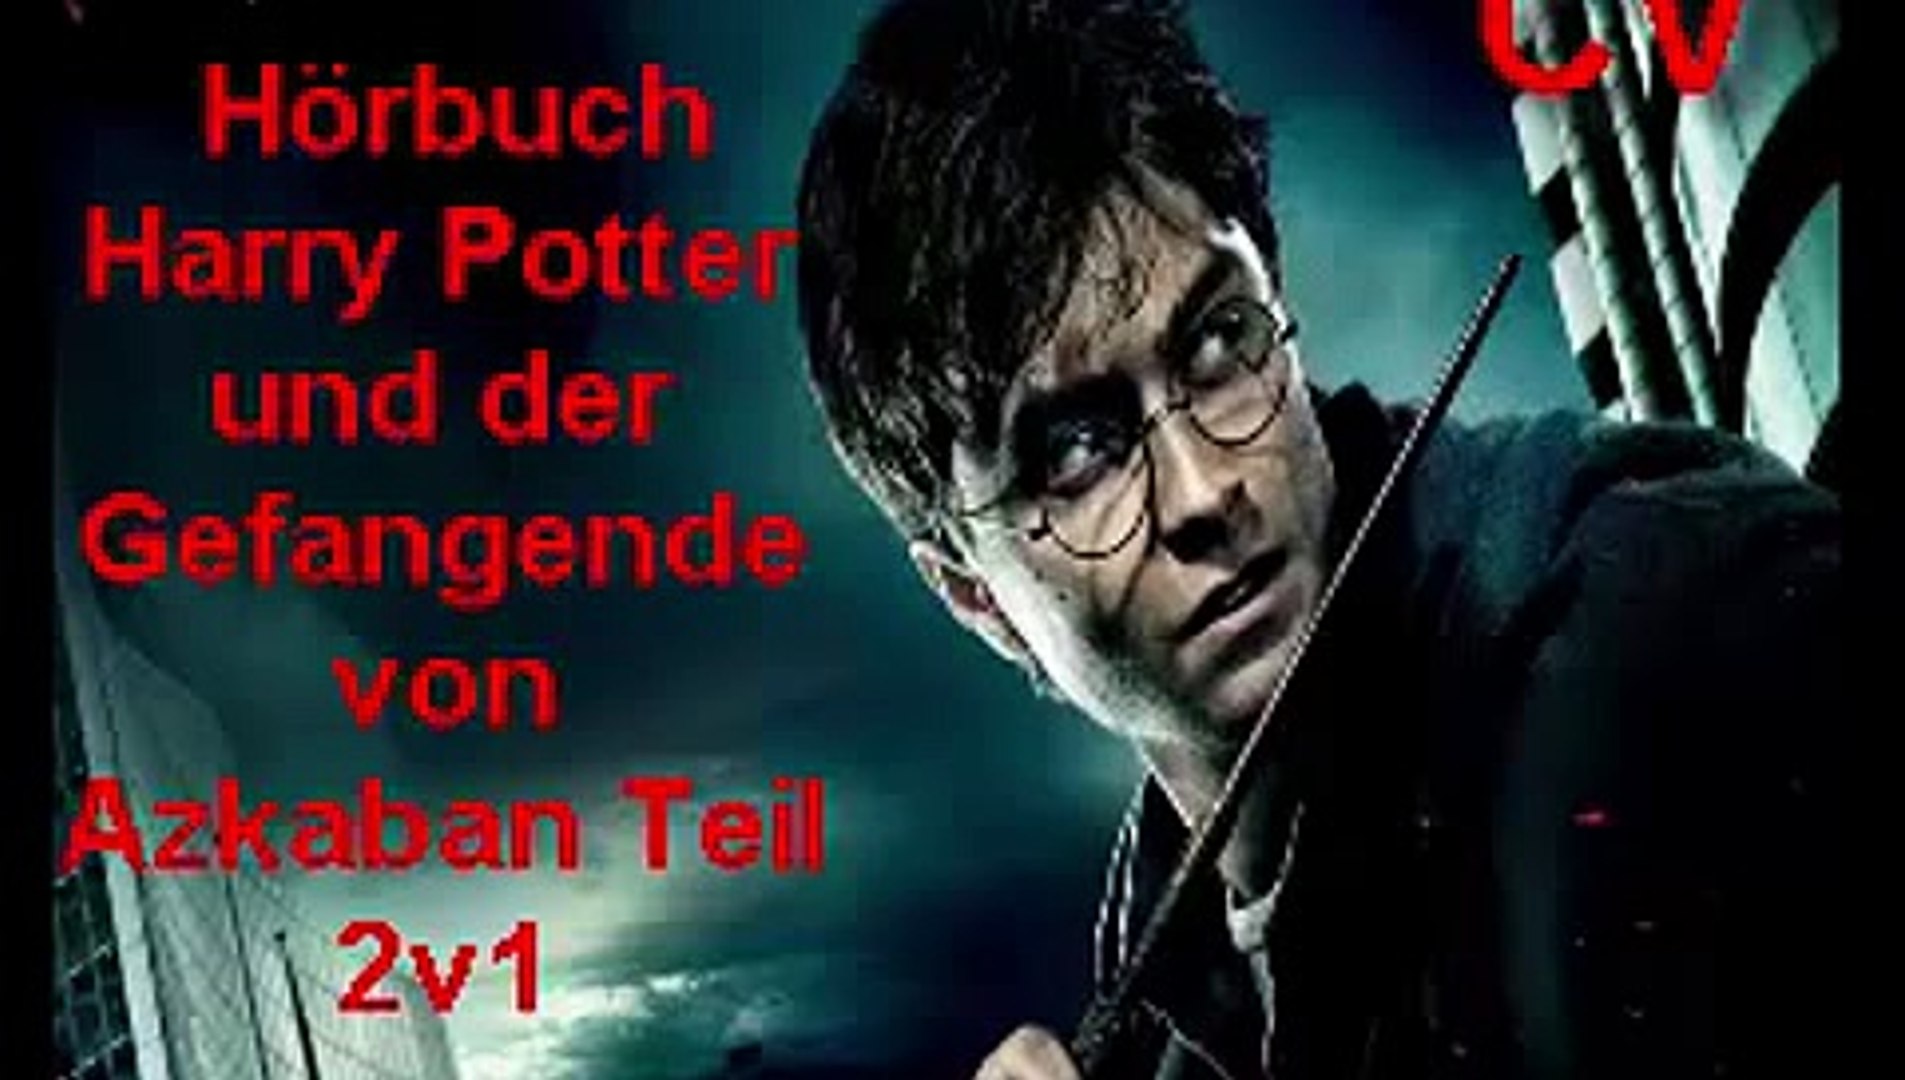 Hörbuch Harry Potter und der Gefangende von Azkaban Teil  2v1_Segment_0_mpeg4 - Dailymotion Video